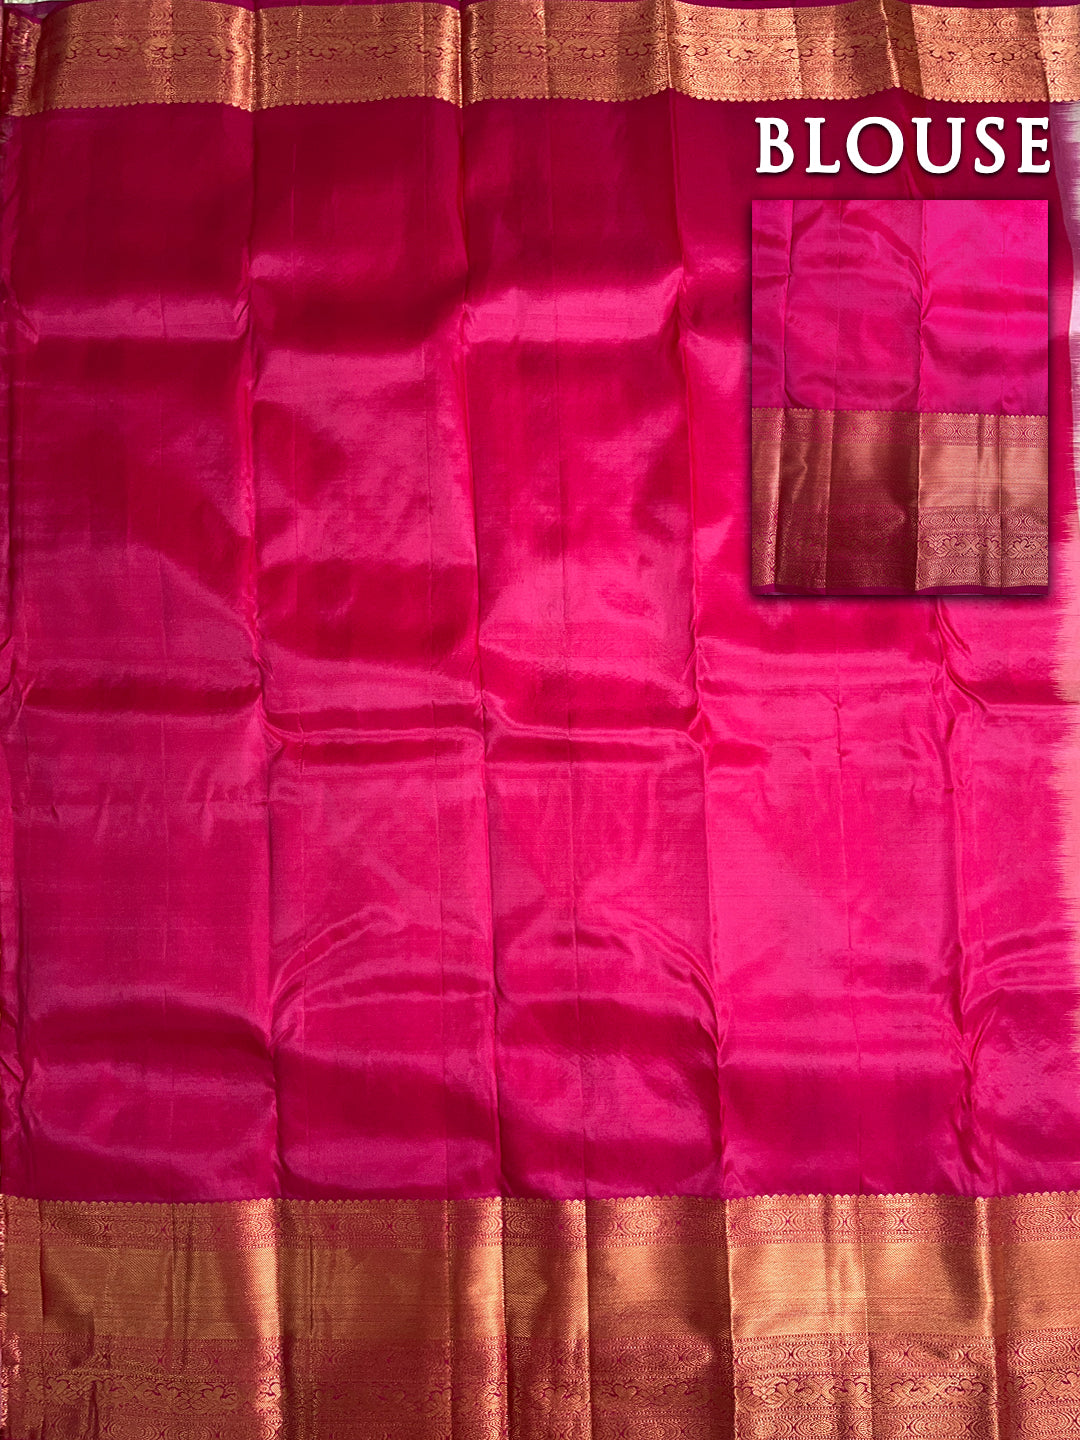 Dual color of pink kanchipuram pure silk saree